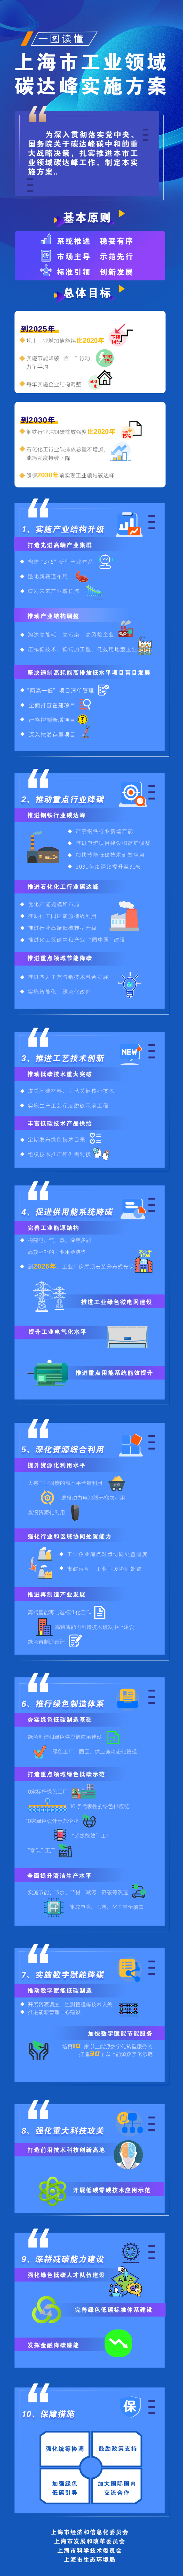 一图读懂《上海市工业领域碳达峰实施方案》.jpg